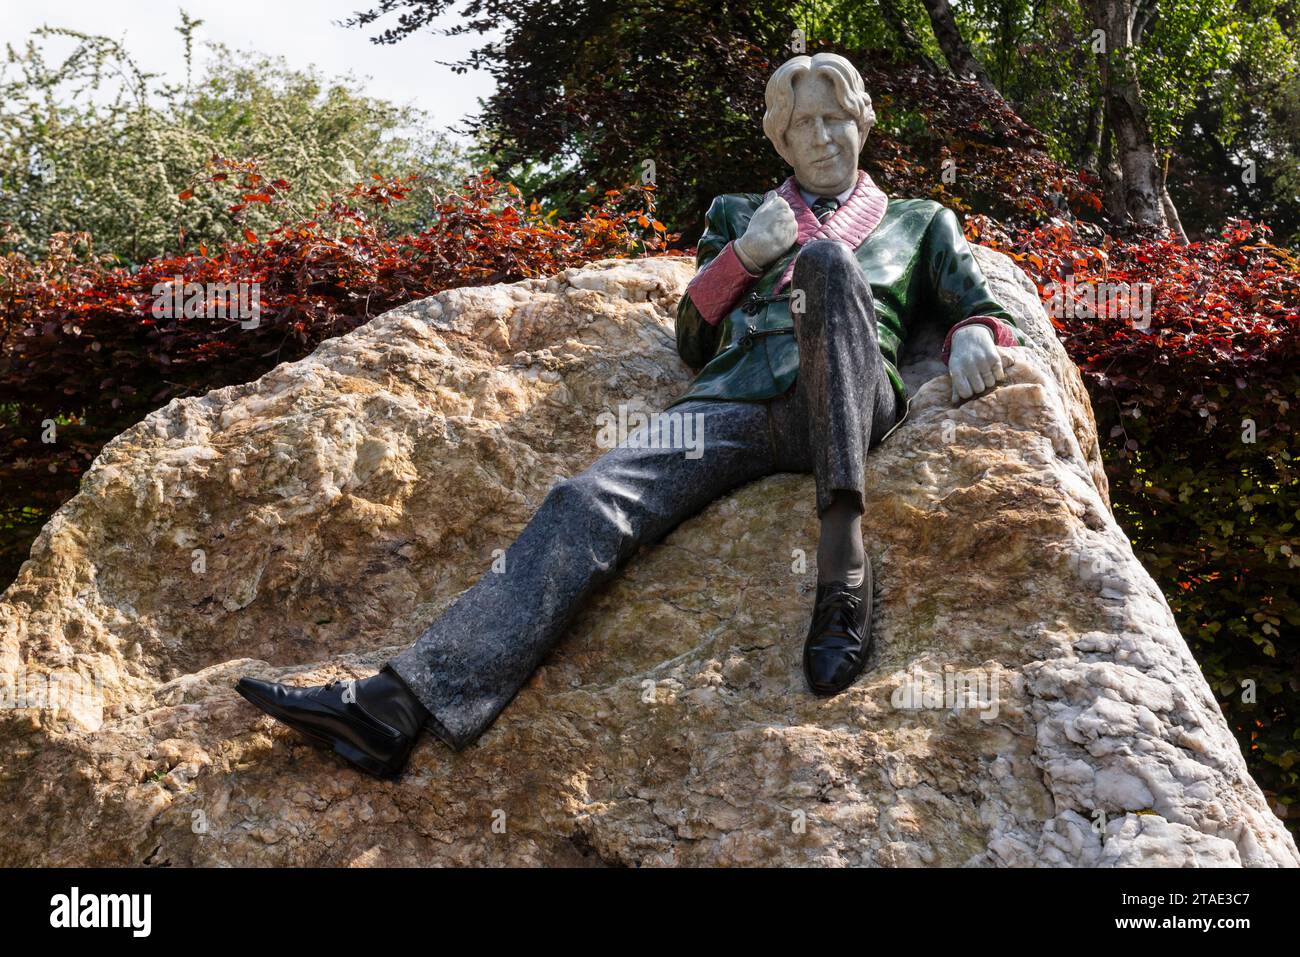 République d'Irlande, Comté de Dublin, Dublin, Merrion Square Park, sculpture de Dany Osborne représentant Oscar Wilde Banque D'Images